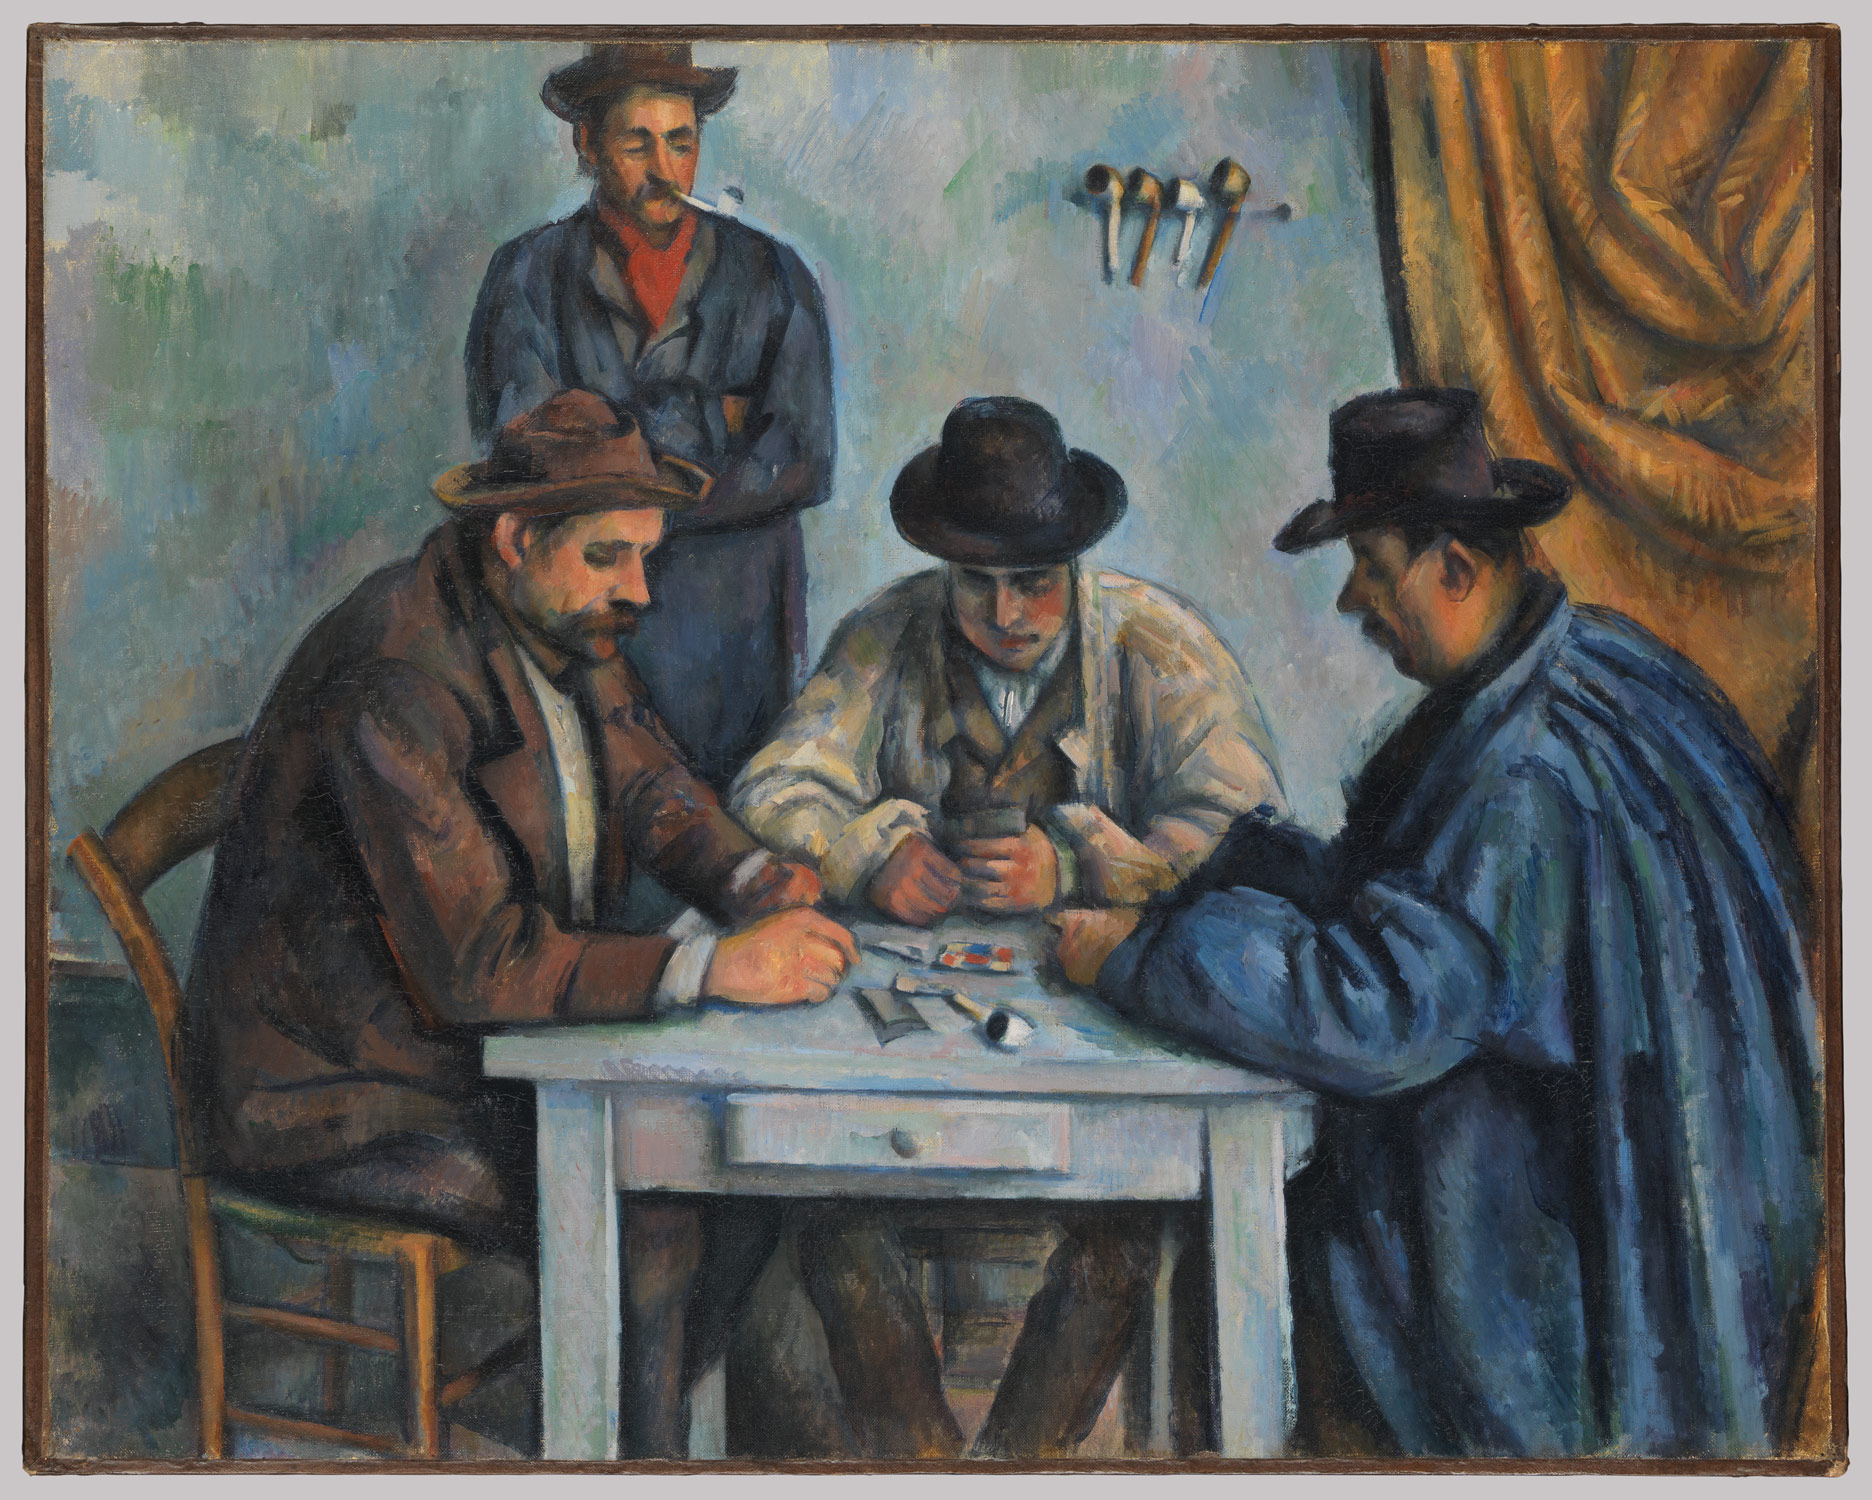 Jugadores de cartas by Paul Cézanne - Alrededor de 1894-1895 - 47.5 × 57 cm Musée d'Orsay